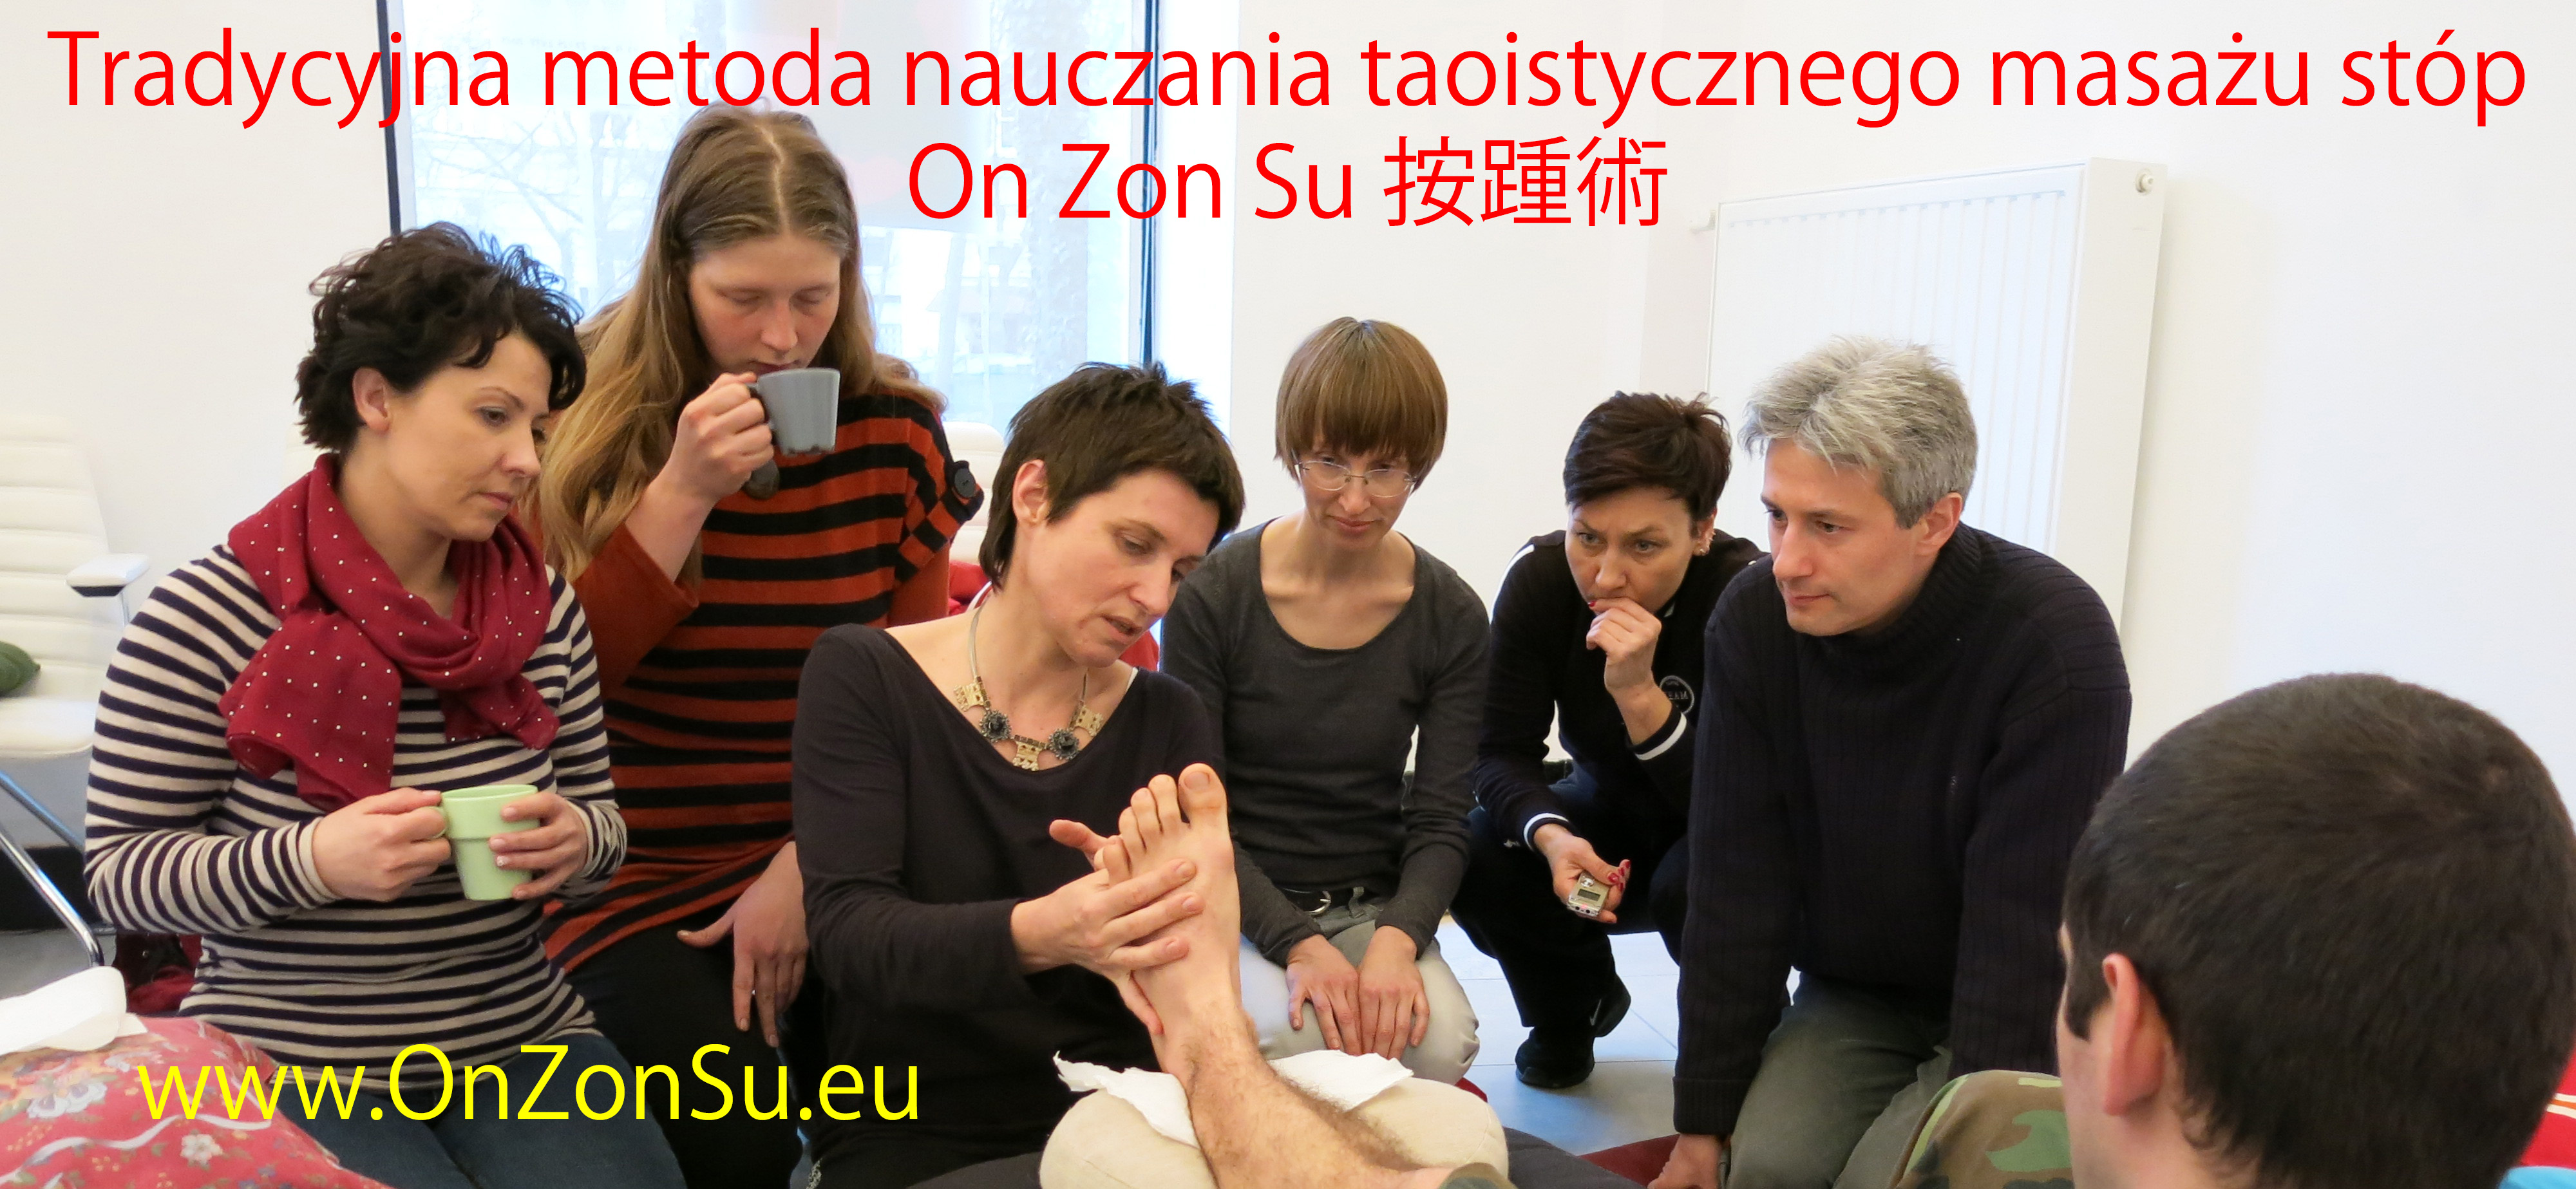 Kurs masażu stóp On Zon Su, Szkolenia refleksologii stóp - Tradycyjna metoda nauczania masażu stóp On Zon Su 按踵術 IMG_0496_MEM_2.jpg